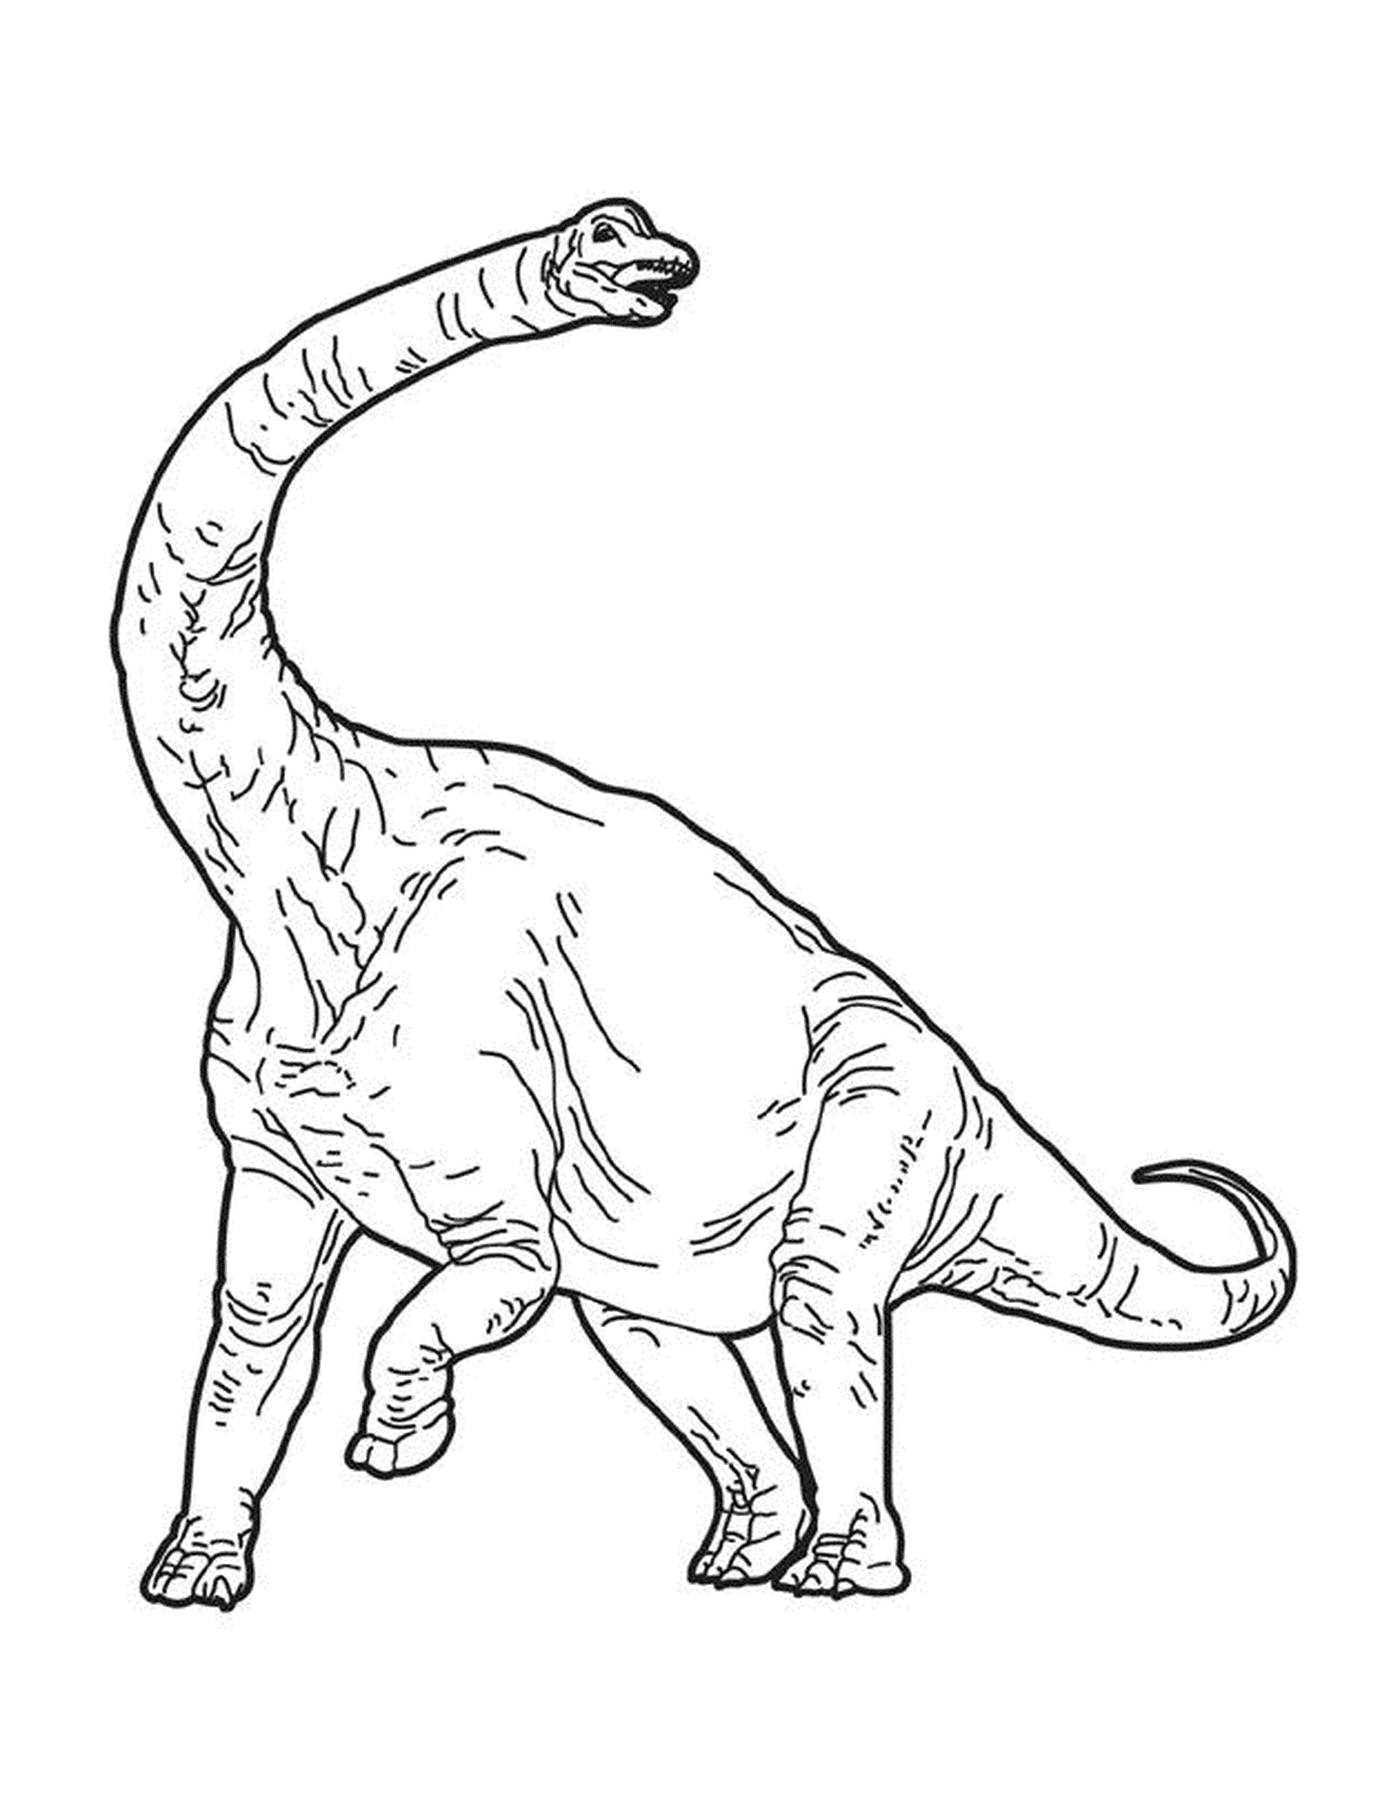  Un dinosaurio con una cola larga 